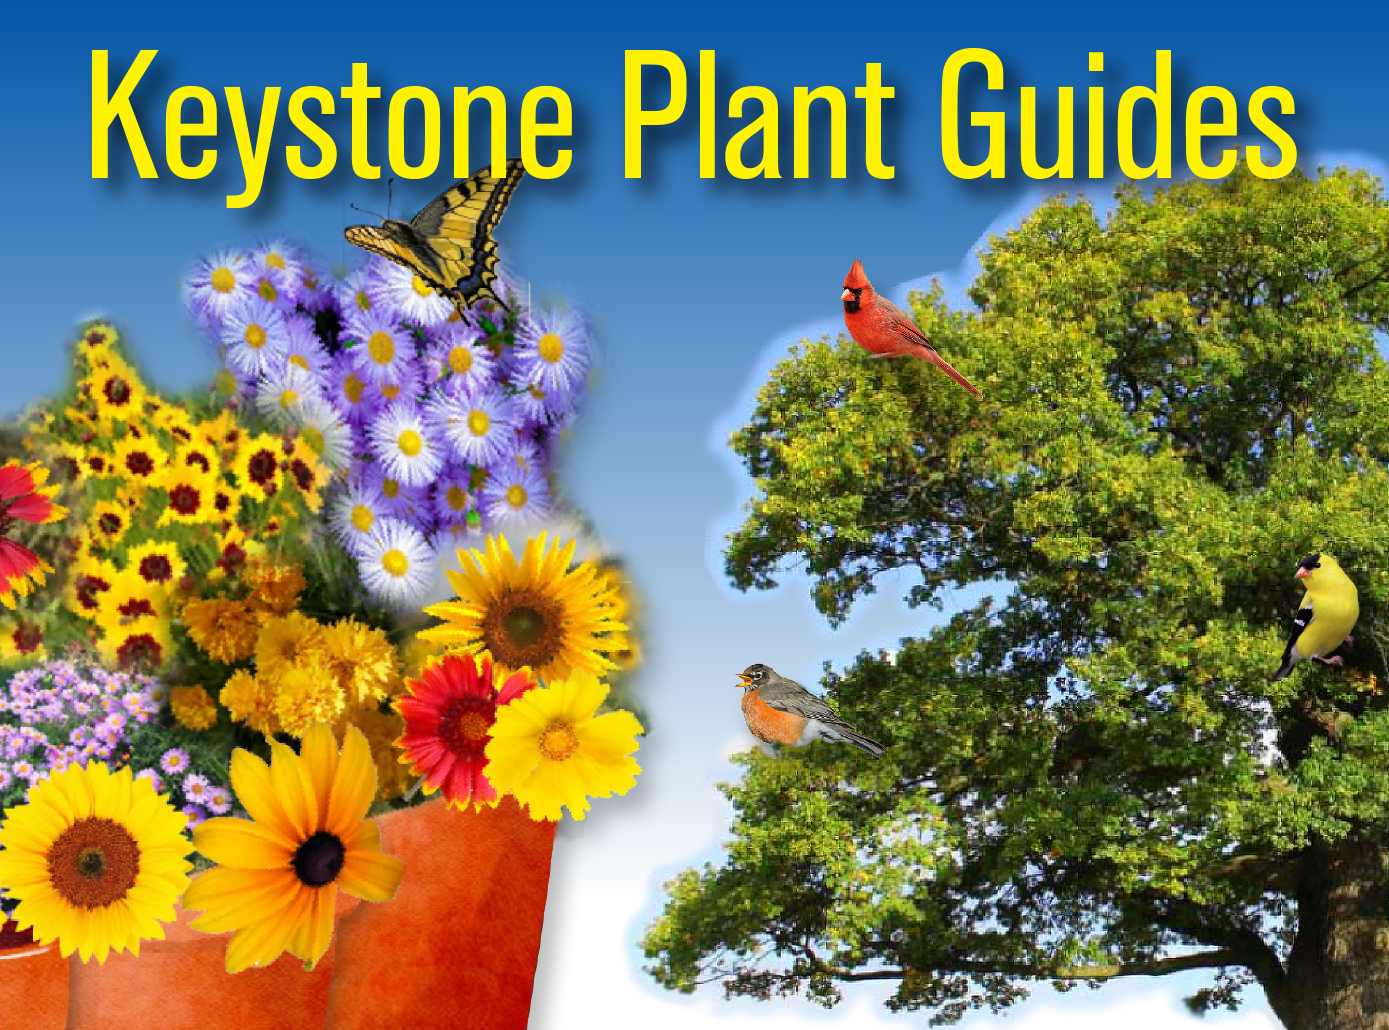 Keystone Plant Guides Homepage